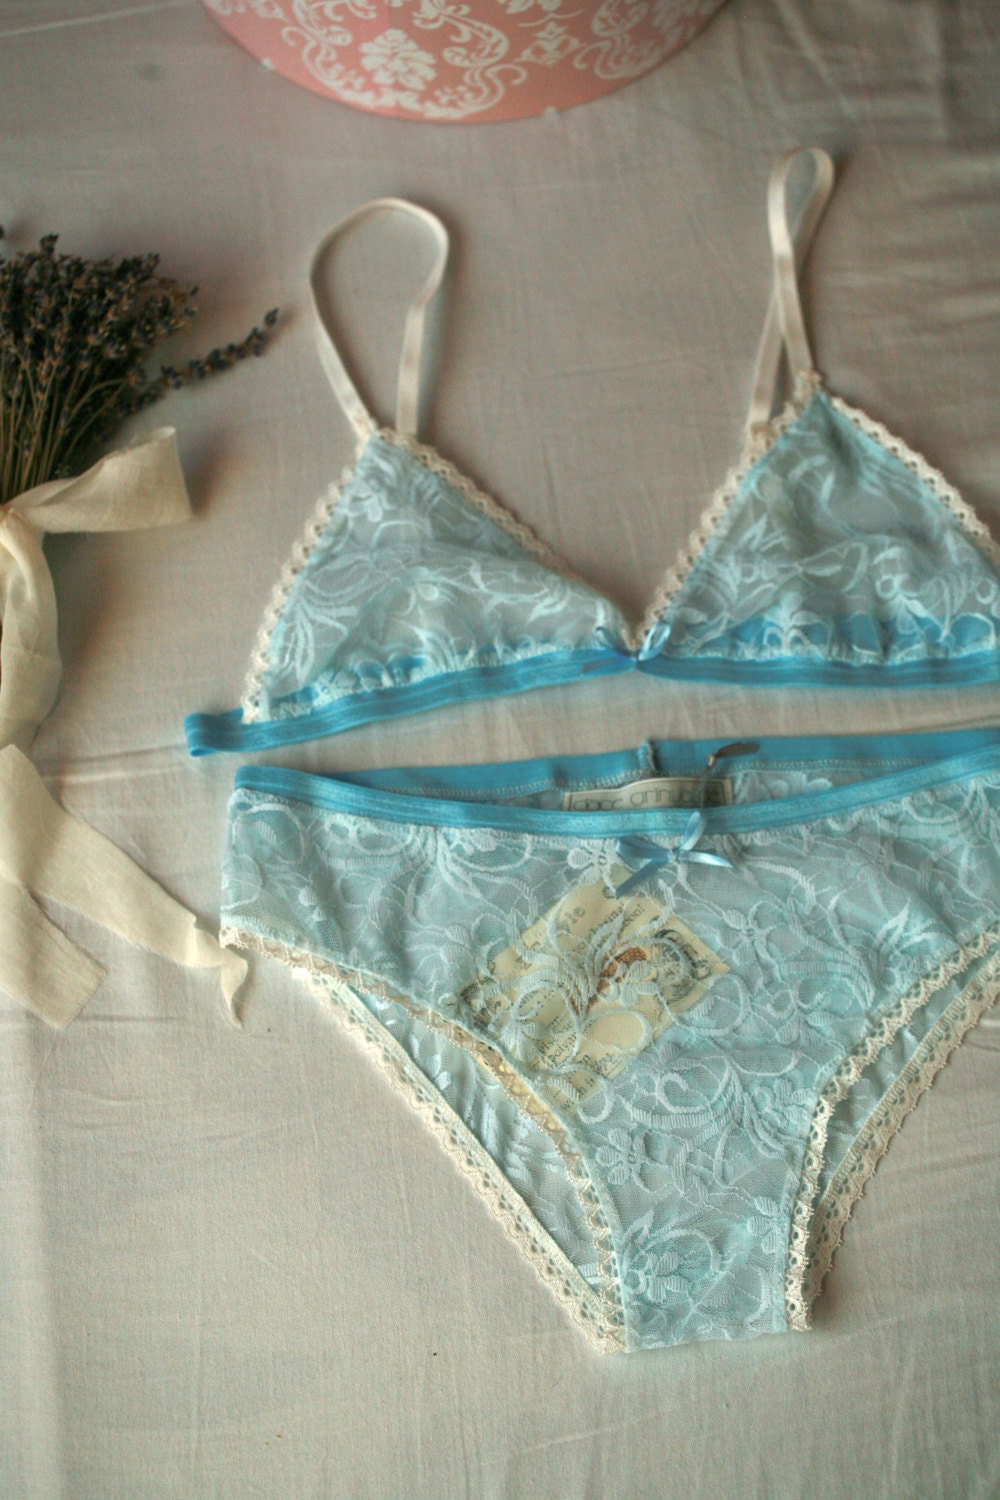 Le lys bleu Baby blue lace basic lingerie set dainty | Etsy